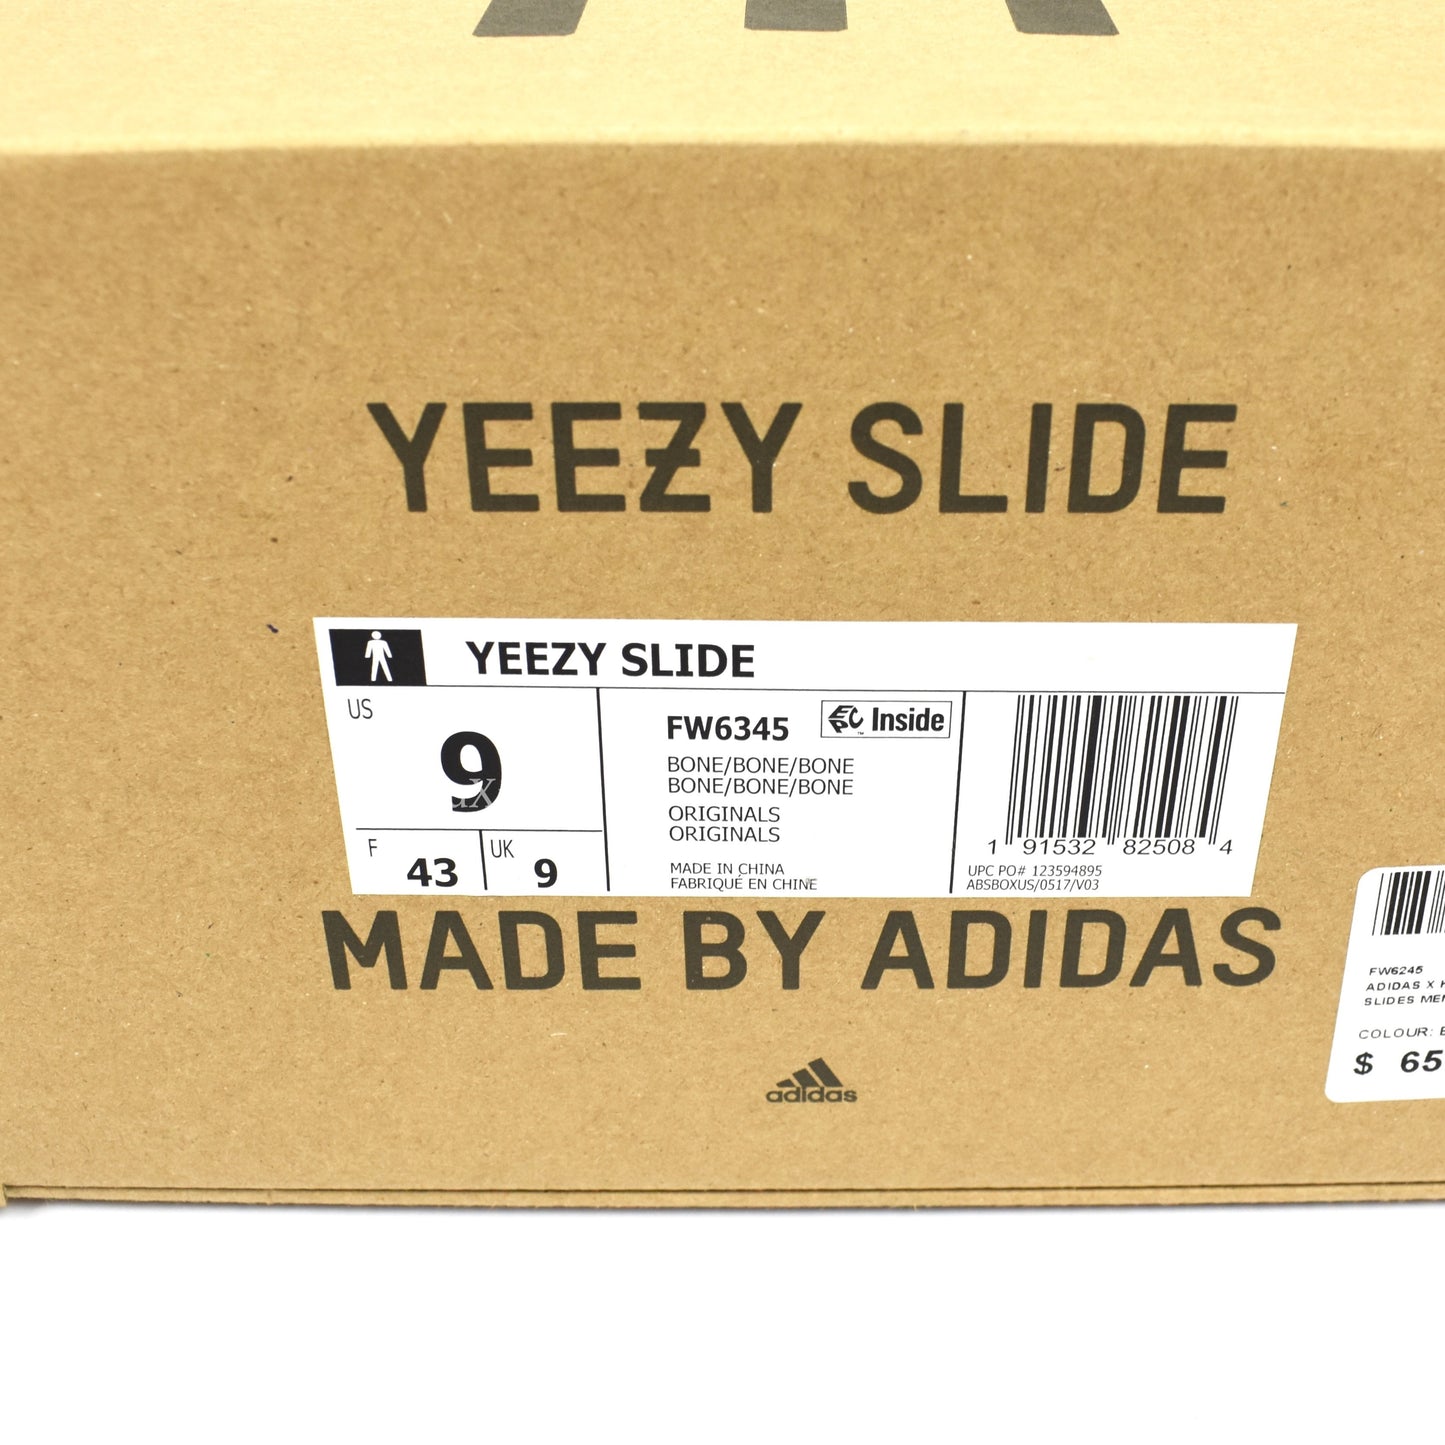 Adidas x Kanye West - Yeezy Slides (Bone)